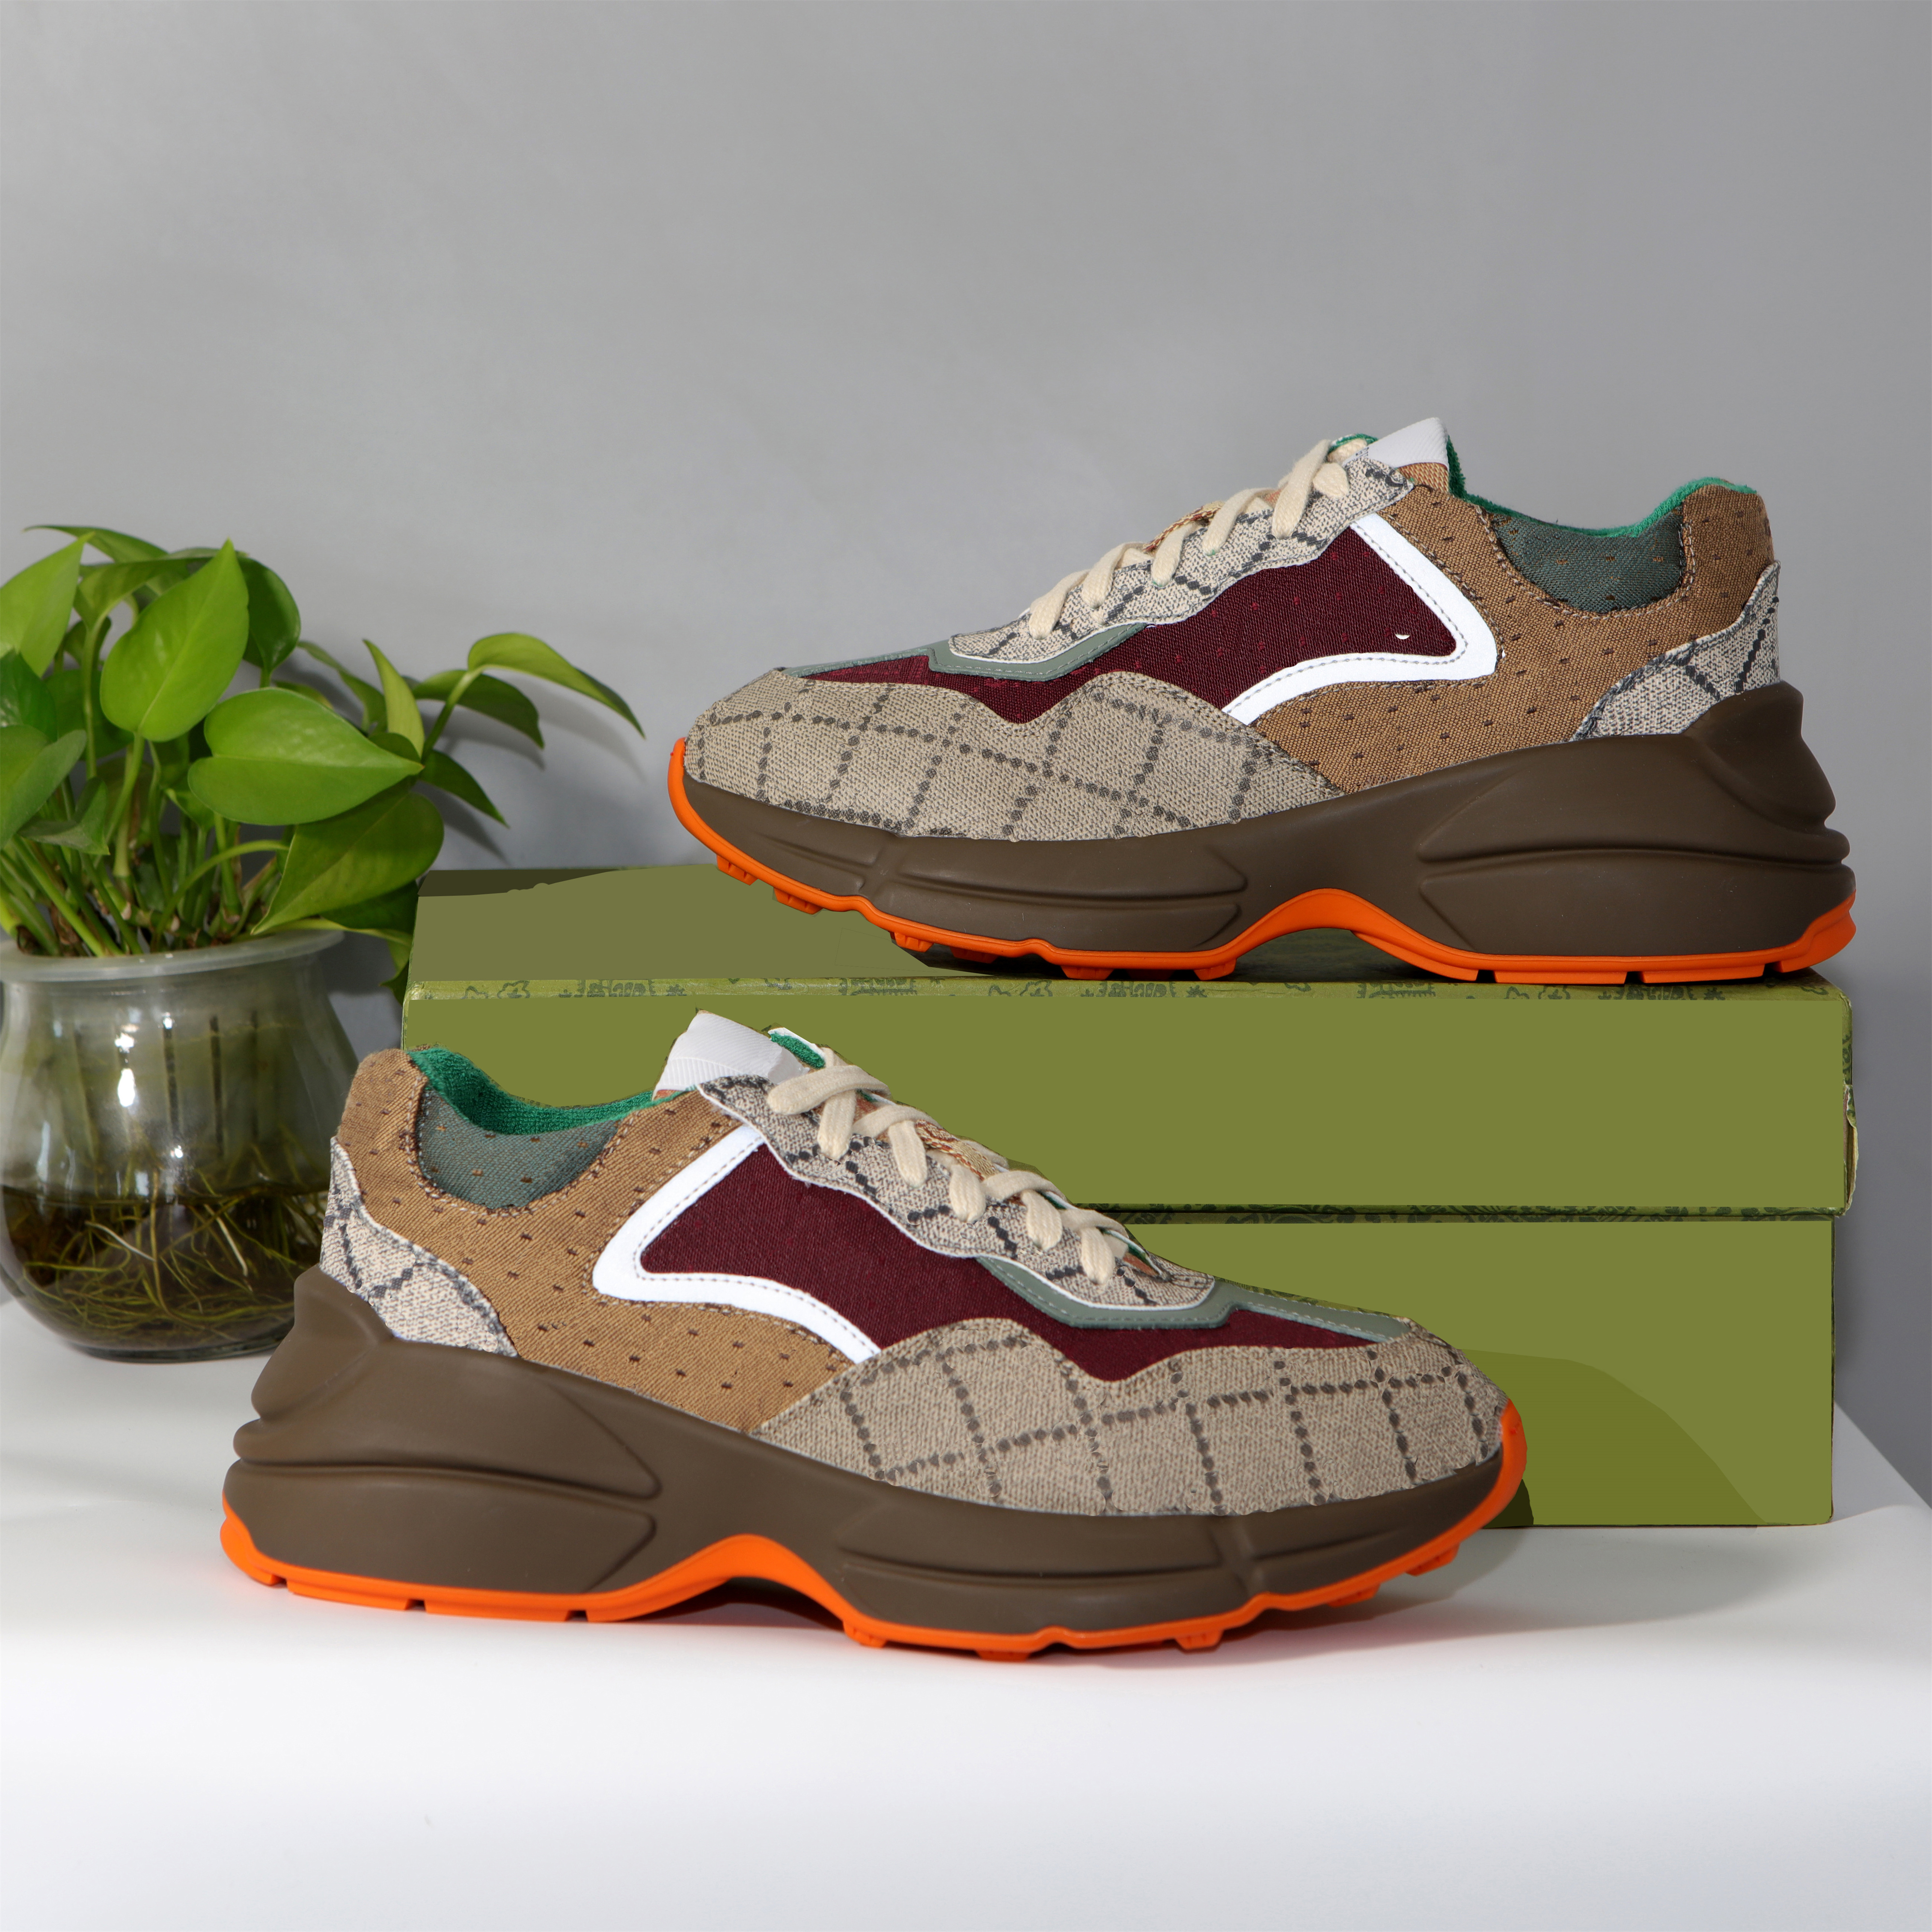 Männer Frauen Freizeitschuhe Rhyton Sneakers Plattform Sneakers Designer Vintage Trainer Leder Sneaker Luxus Chaussures Multicolor -Trainer mit Kasten